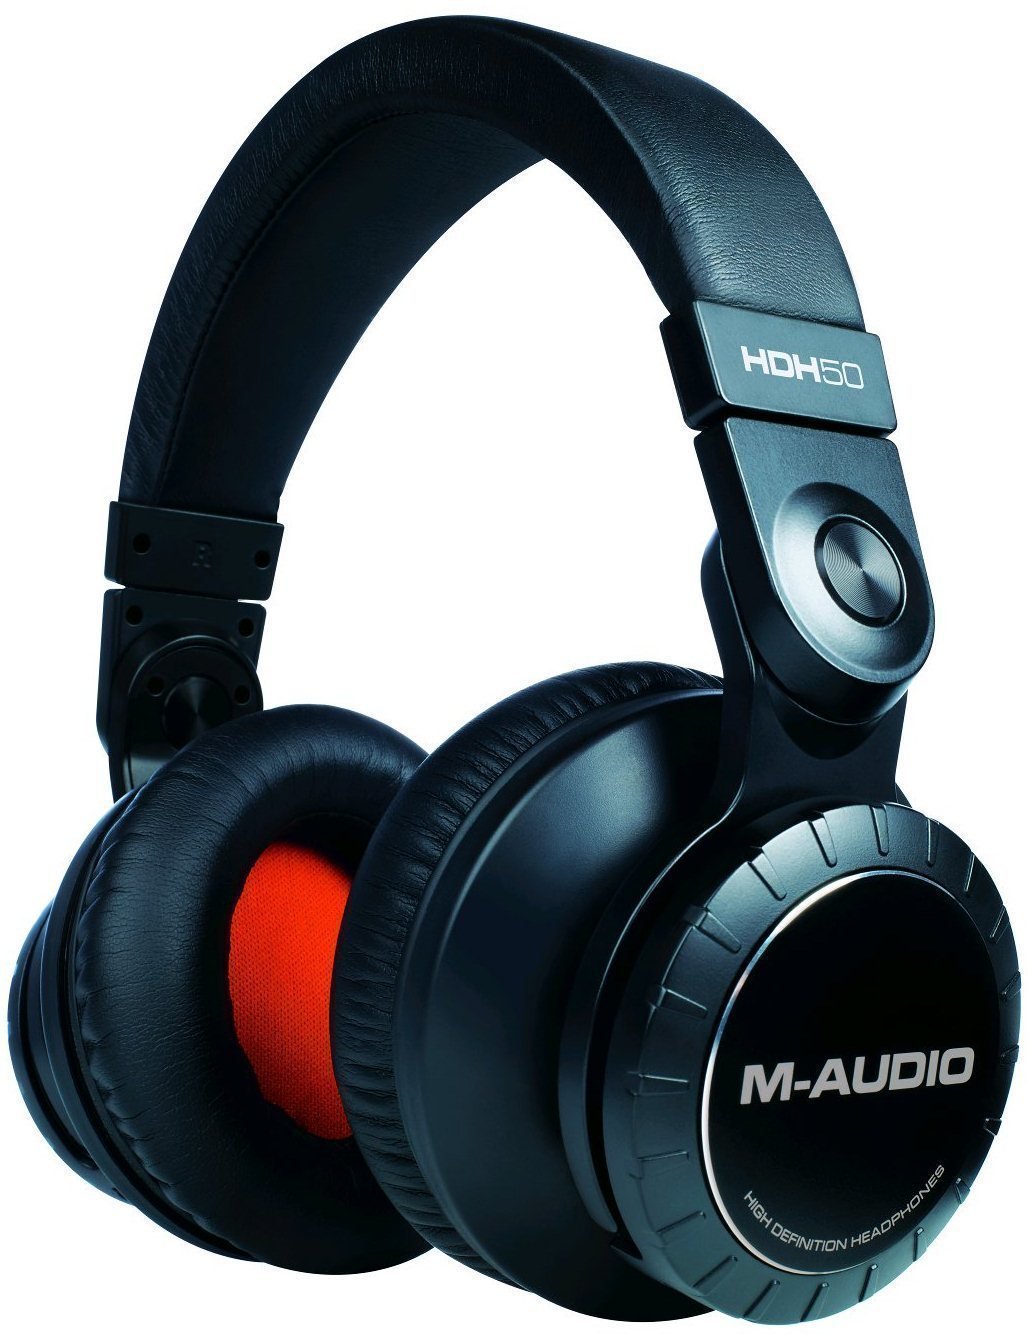 Studio-hoofdtelefoon M-Audio HDH50 High Definition Headphones